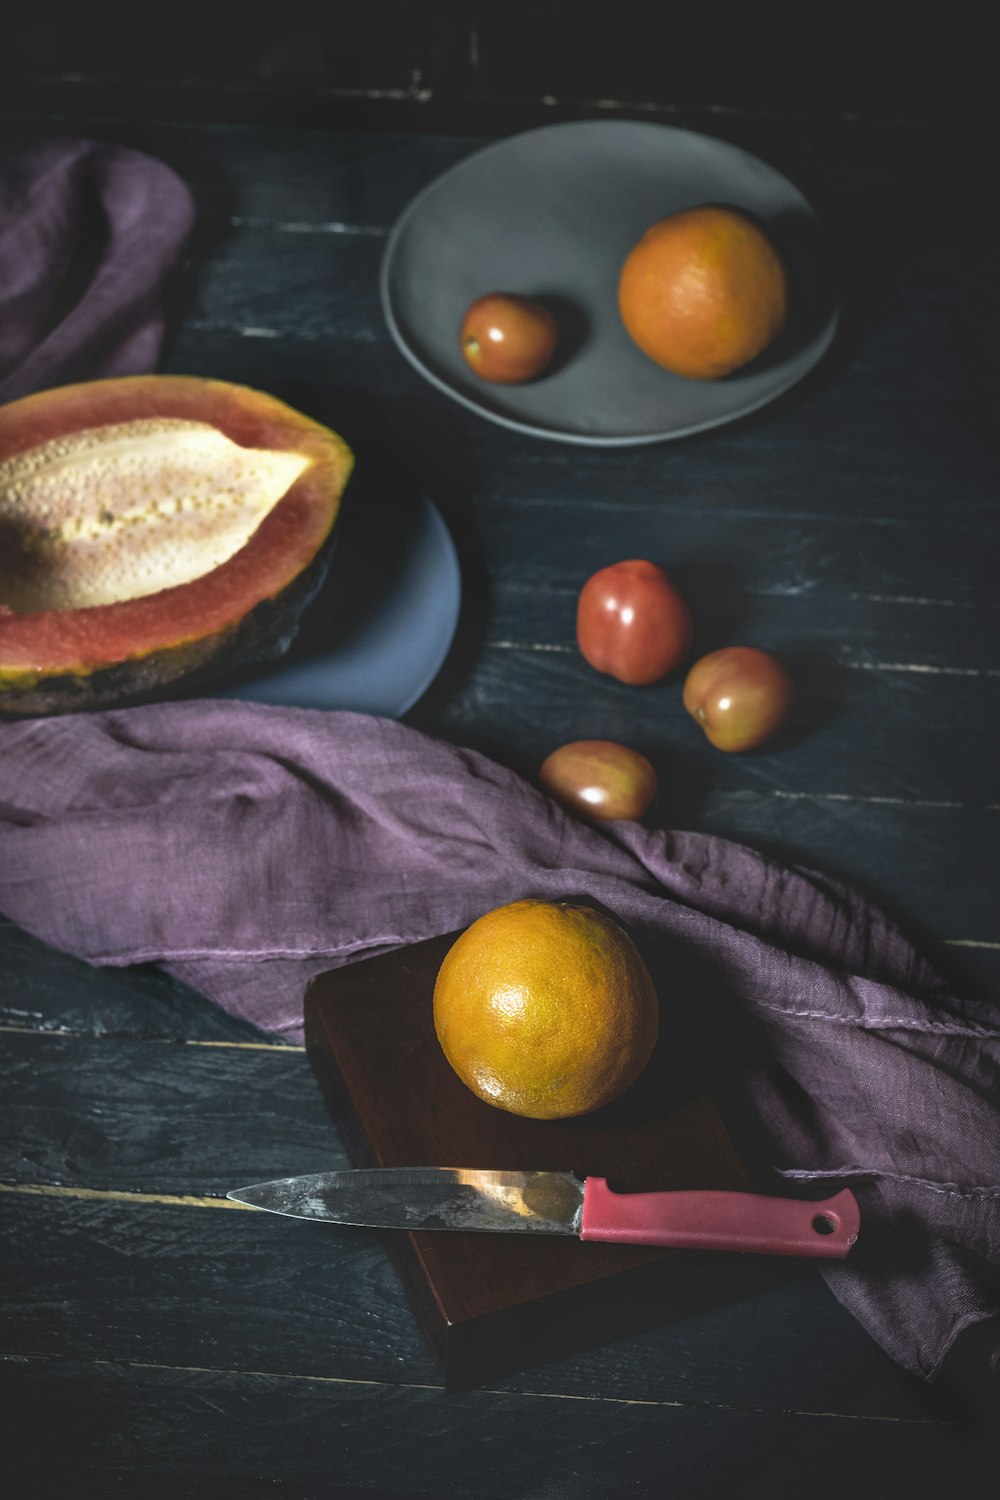 Früchte in der Nähe von rotem und grauem Messer auf Holz